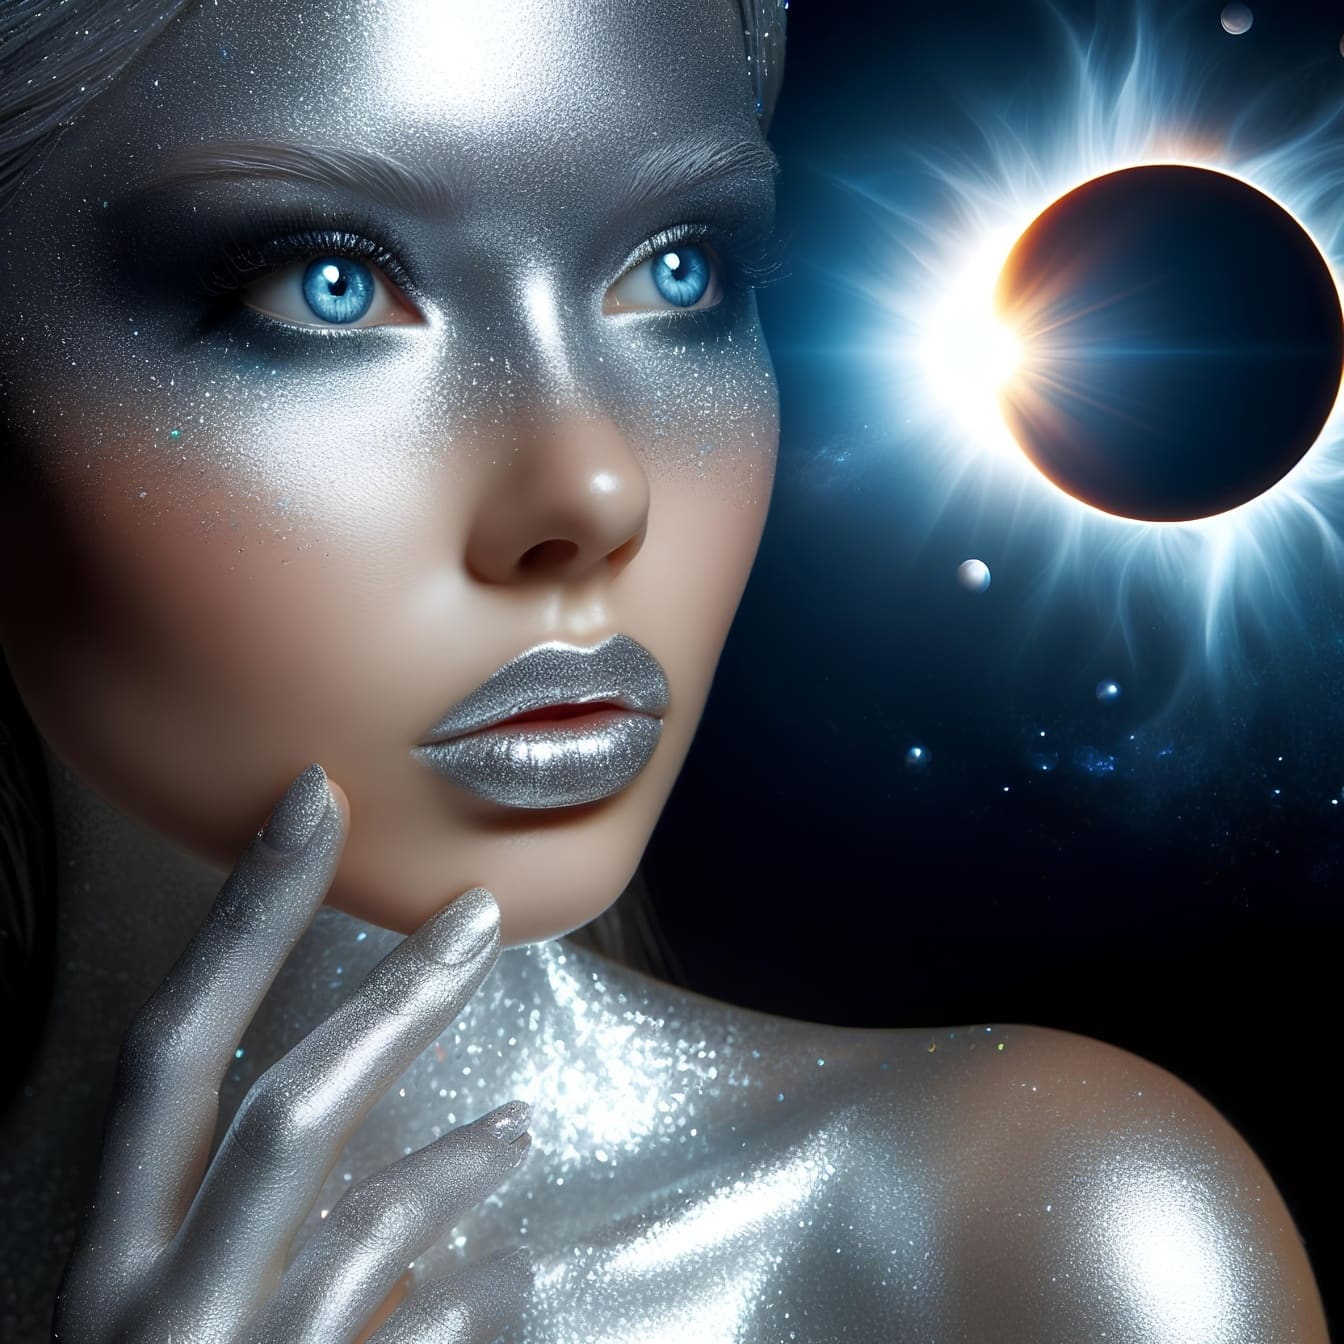 Gráfico digital de una mujer con maquillaje de purpurina y ojos azules, representación de la belleza astral